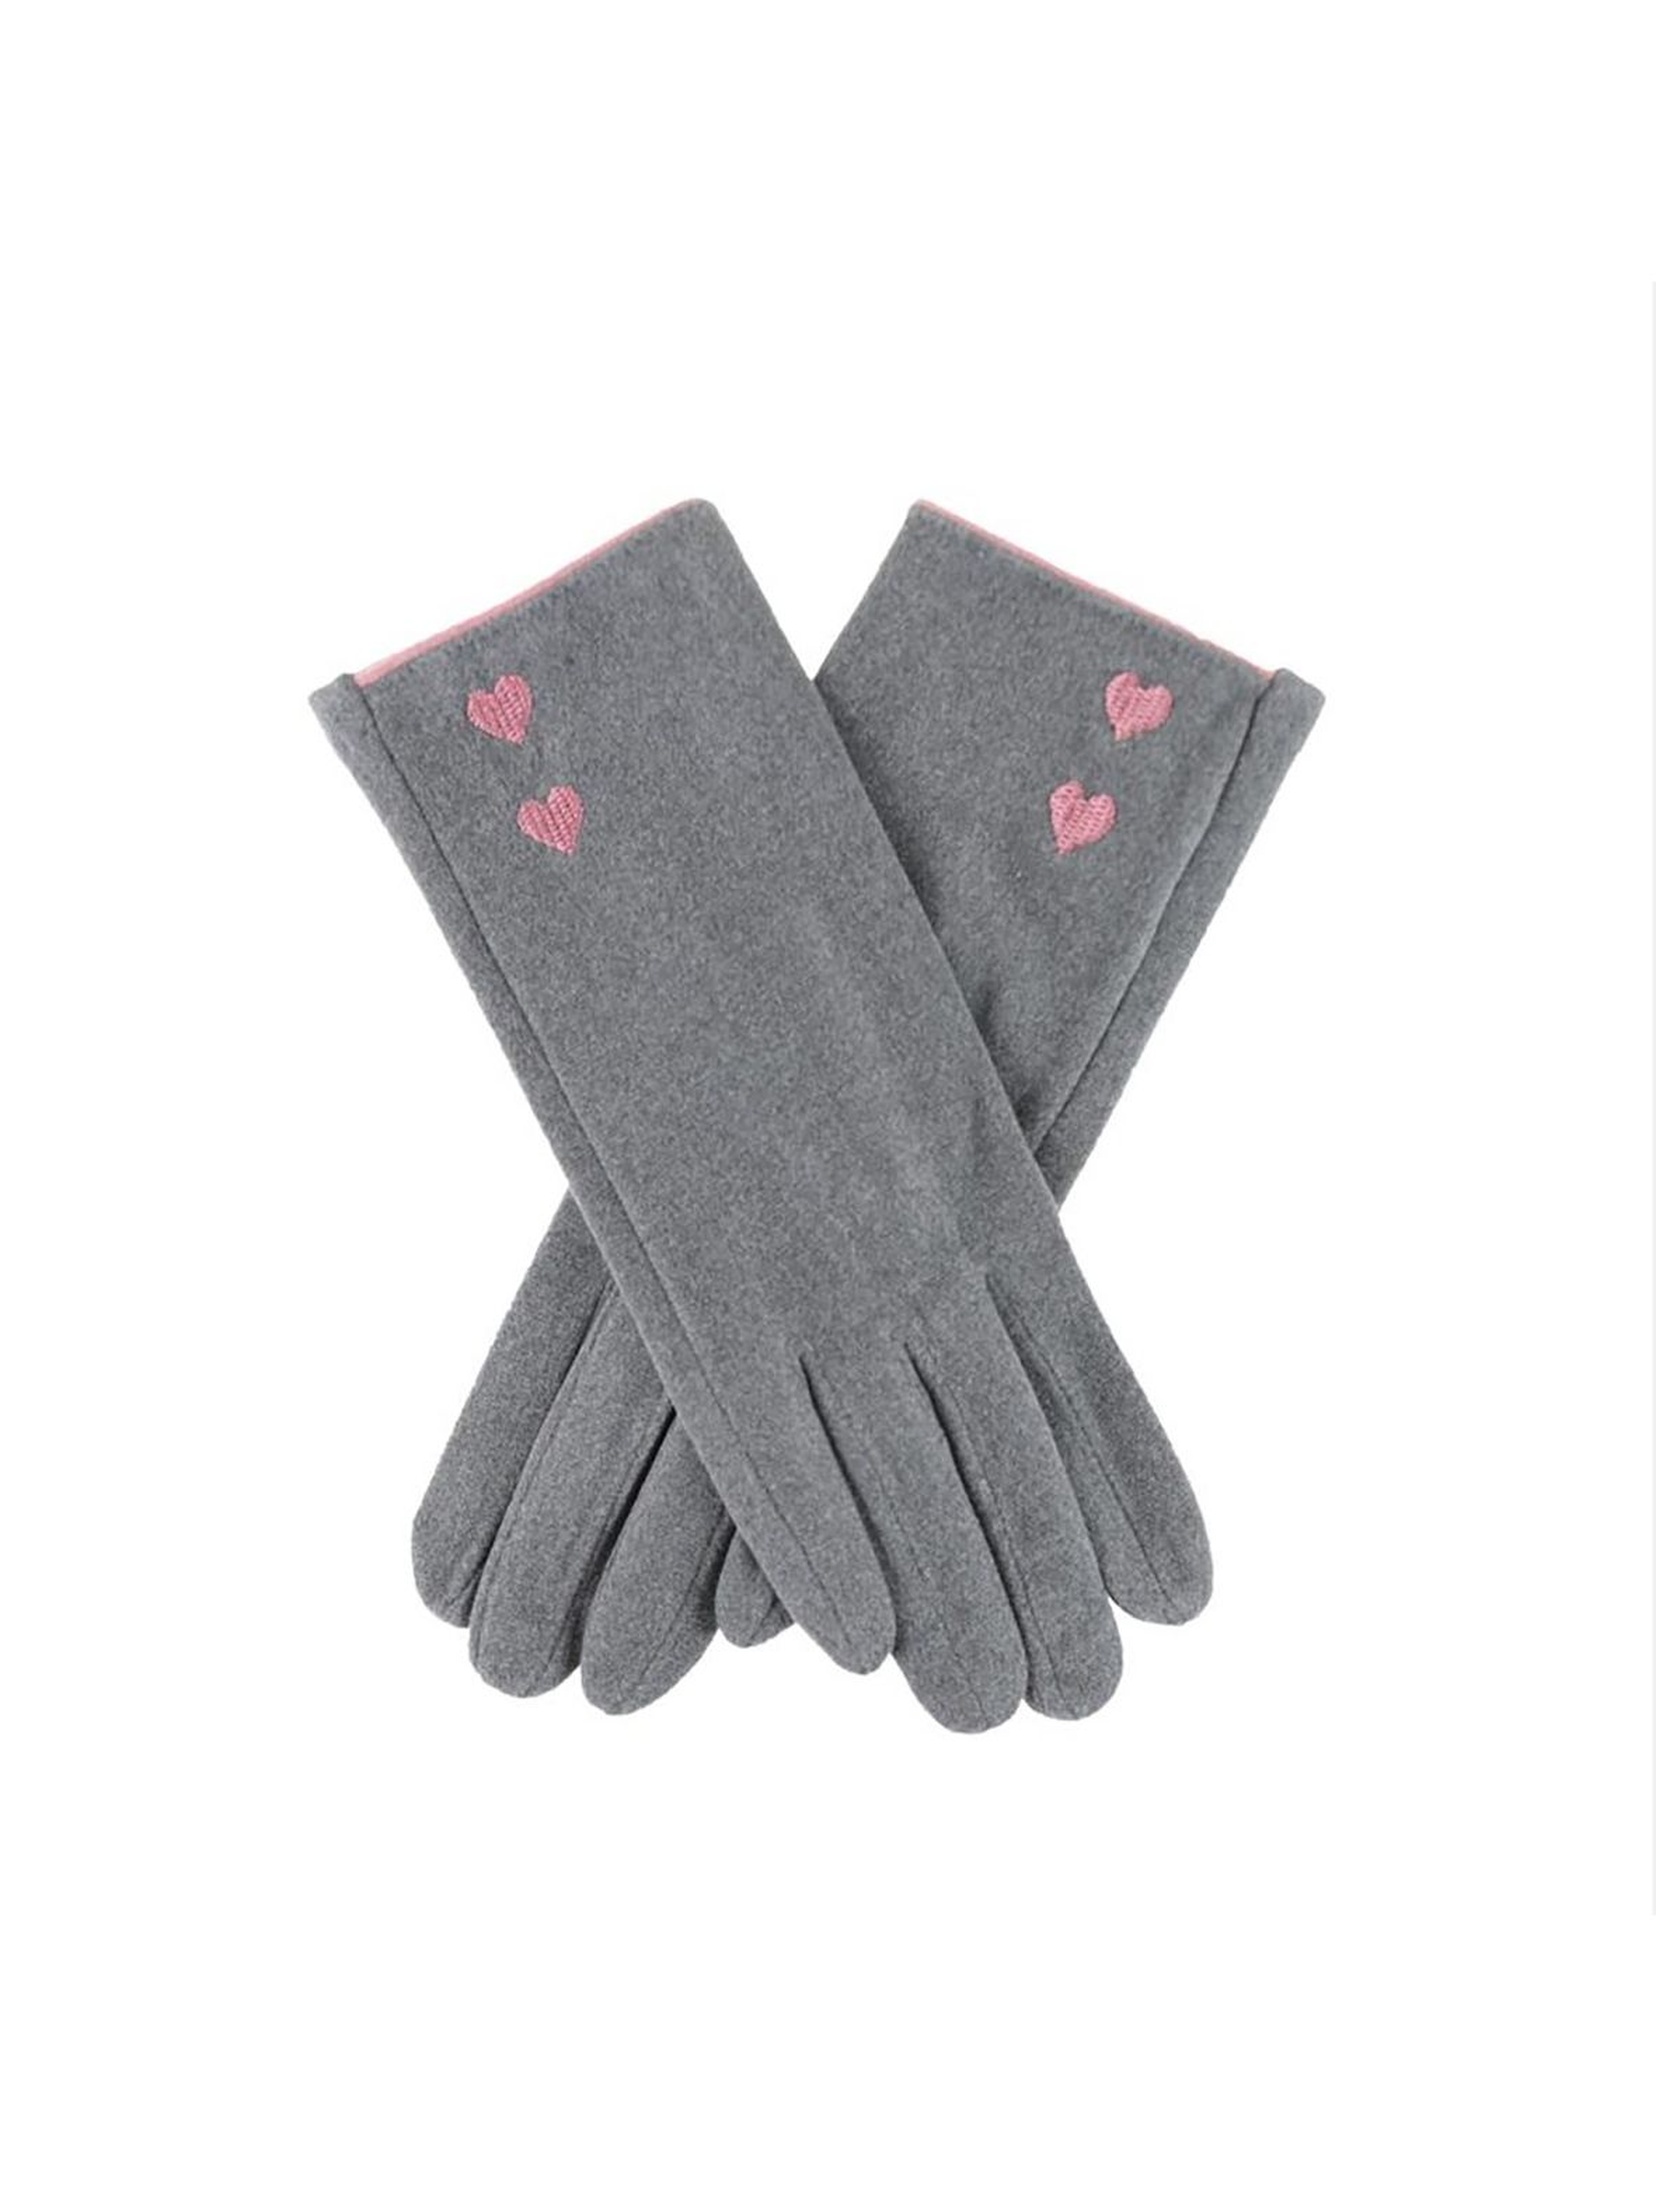 Rękawiczki damskie - szare z różowymi serduszkami